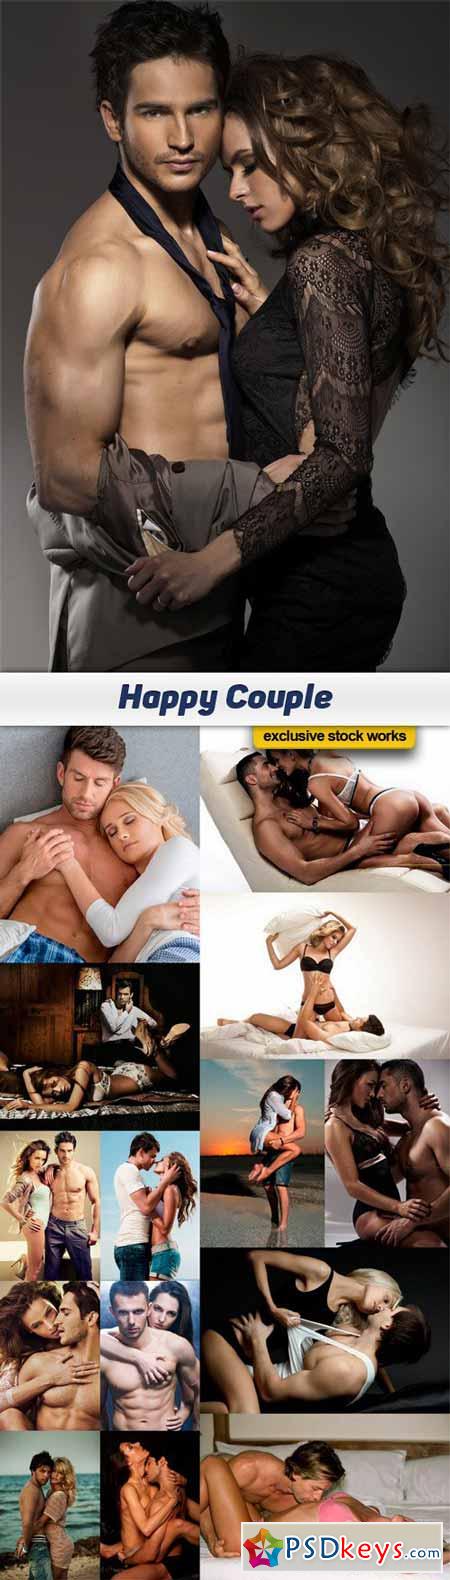 Happy Couple - 15 JPEG